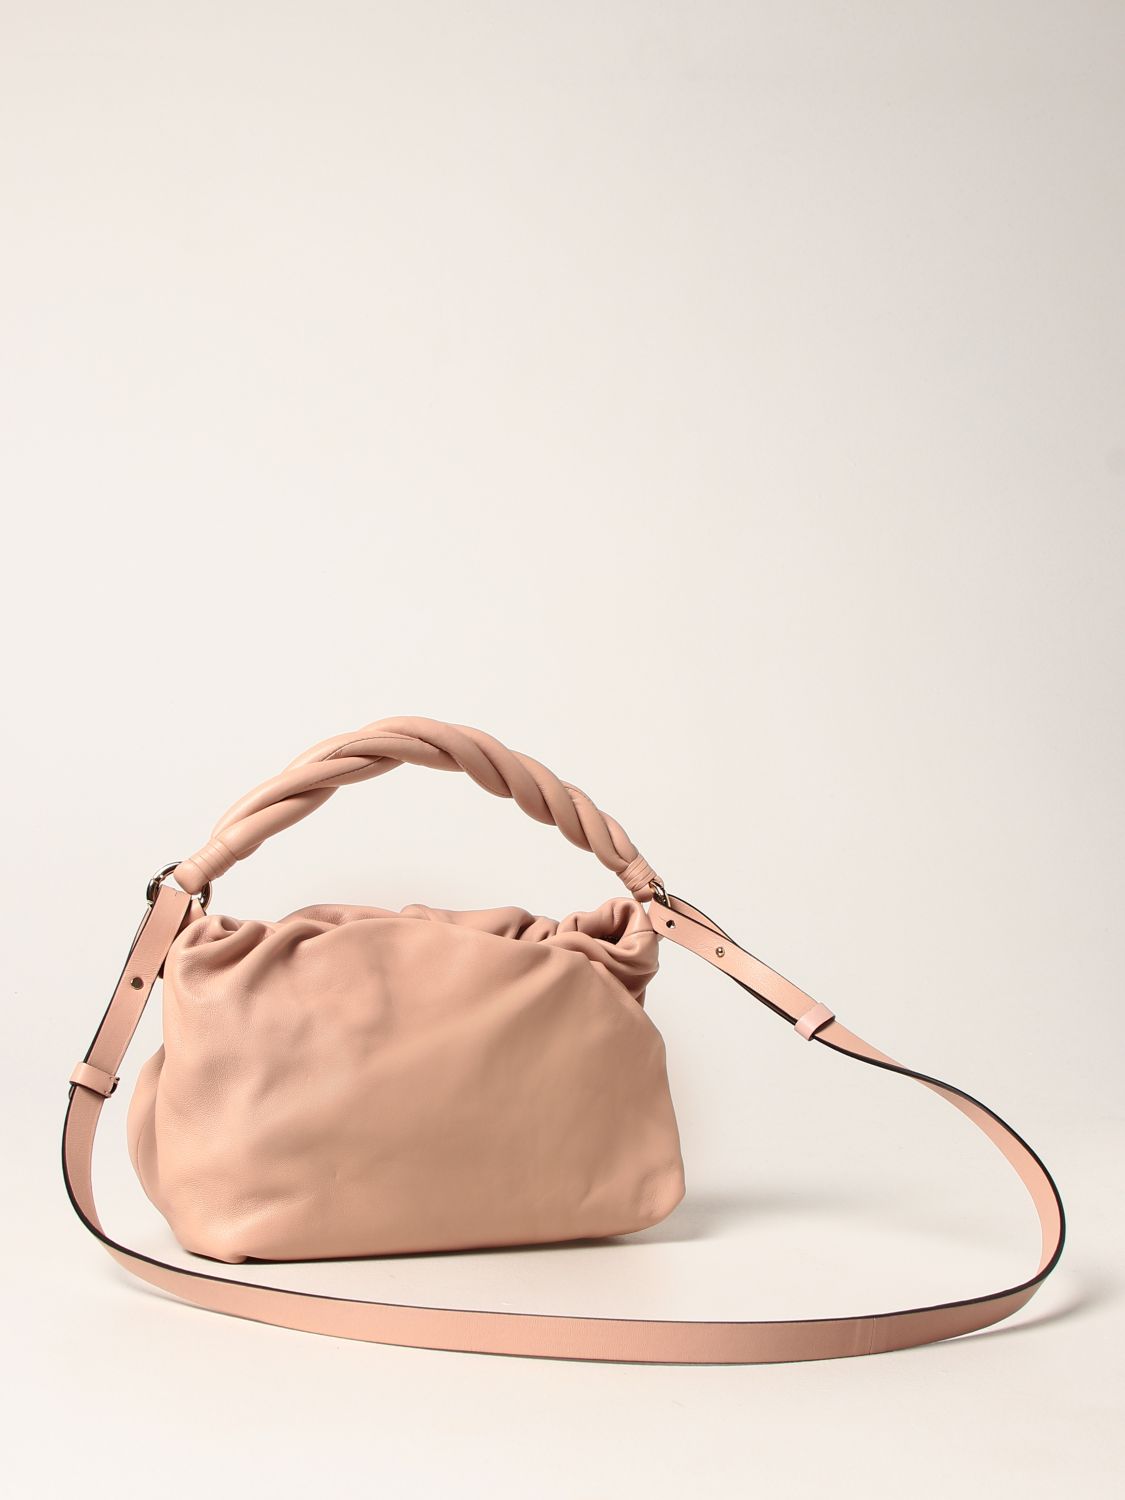 Handbag Red(V): Turnered Red (V) leather bag pink 3